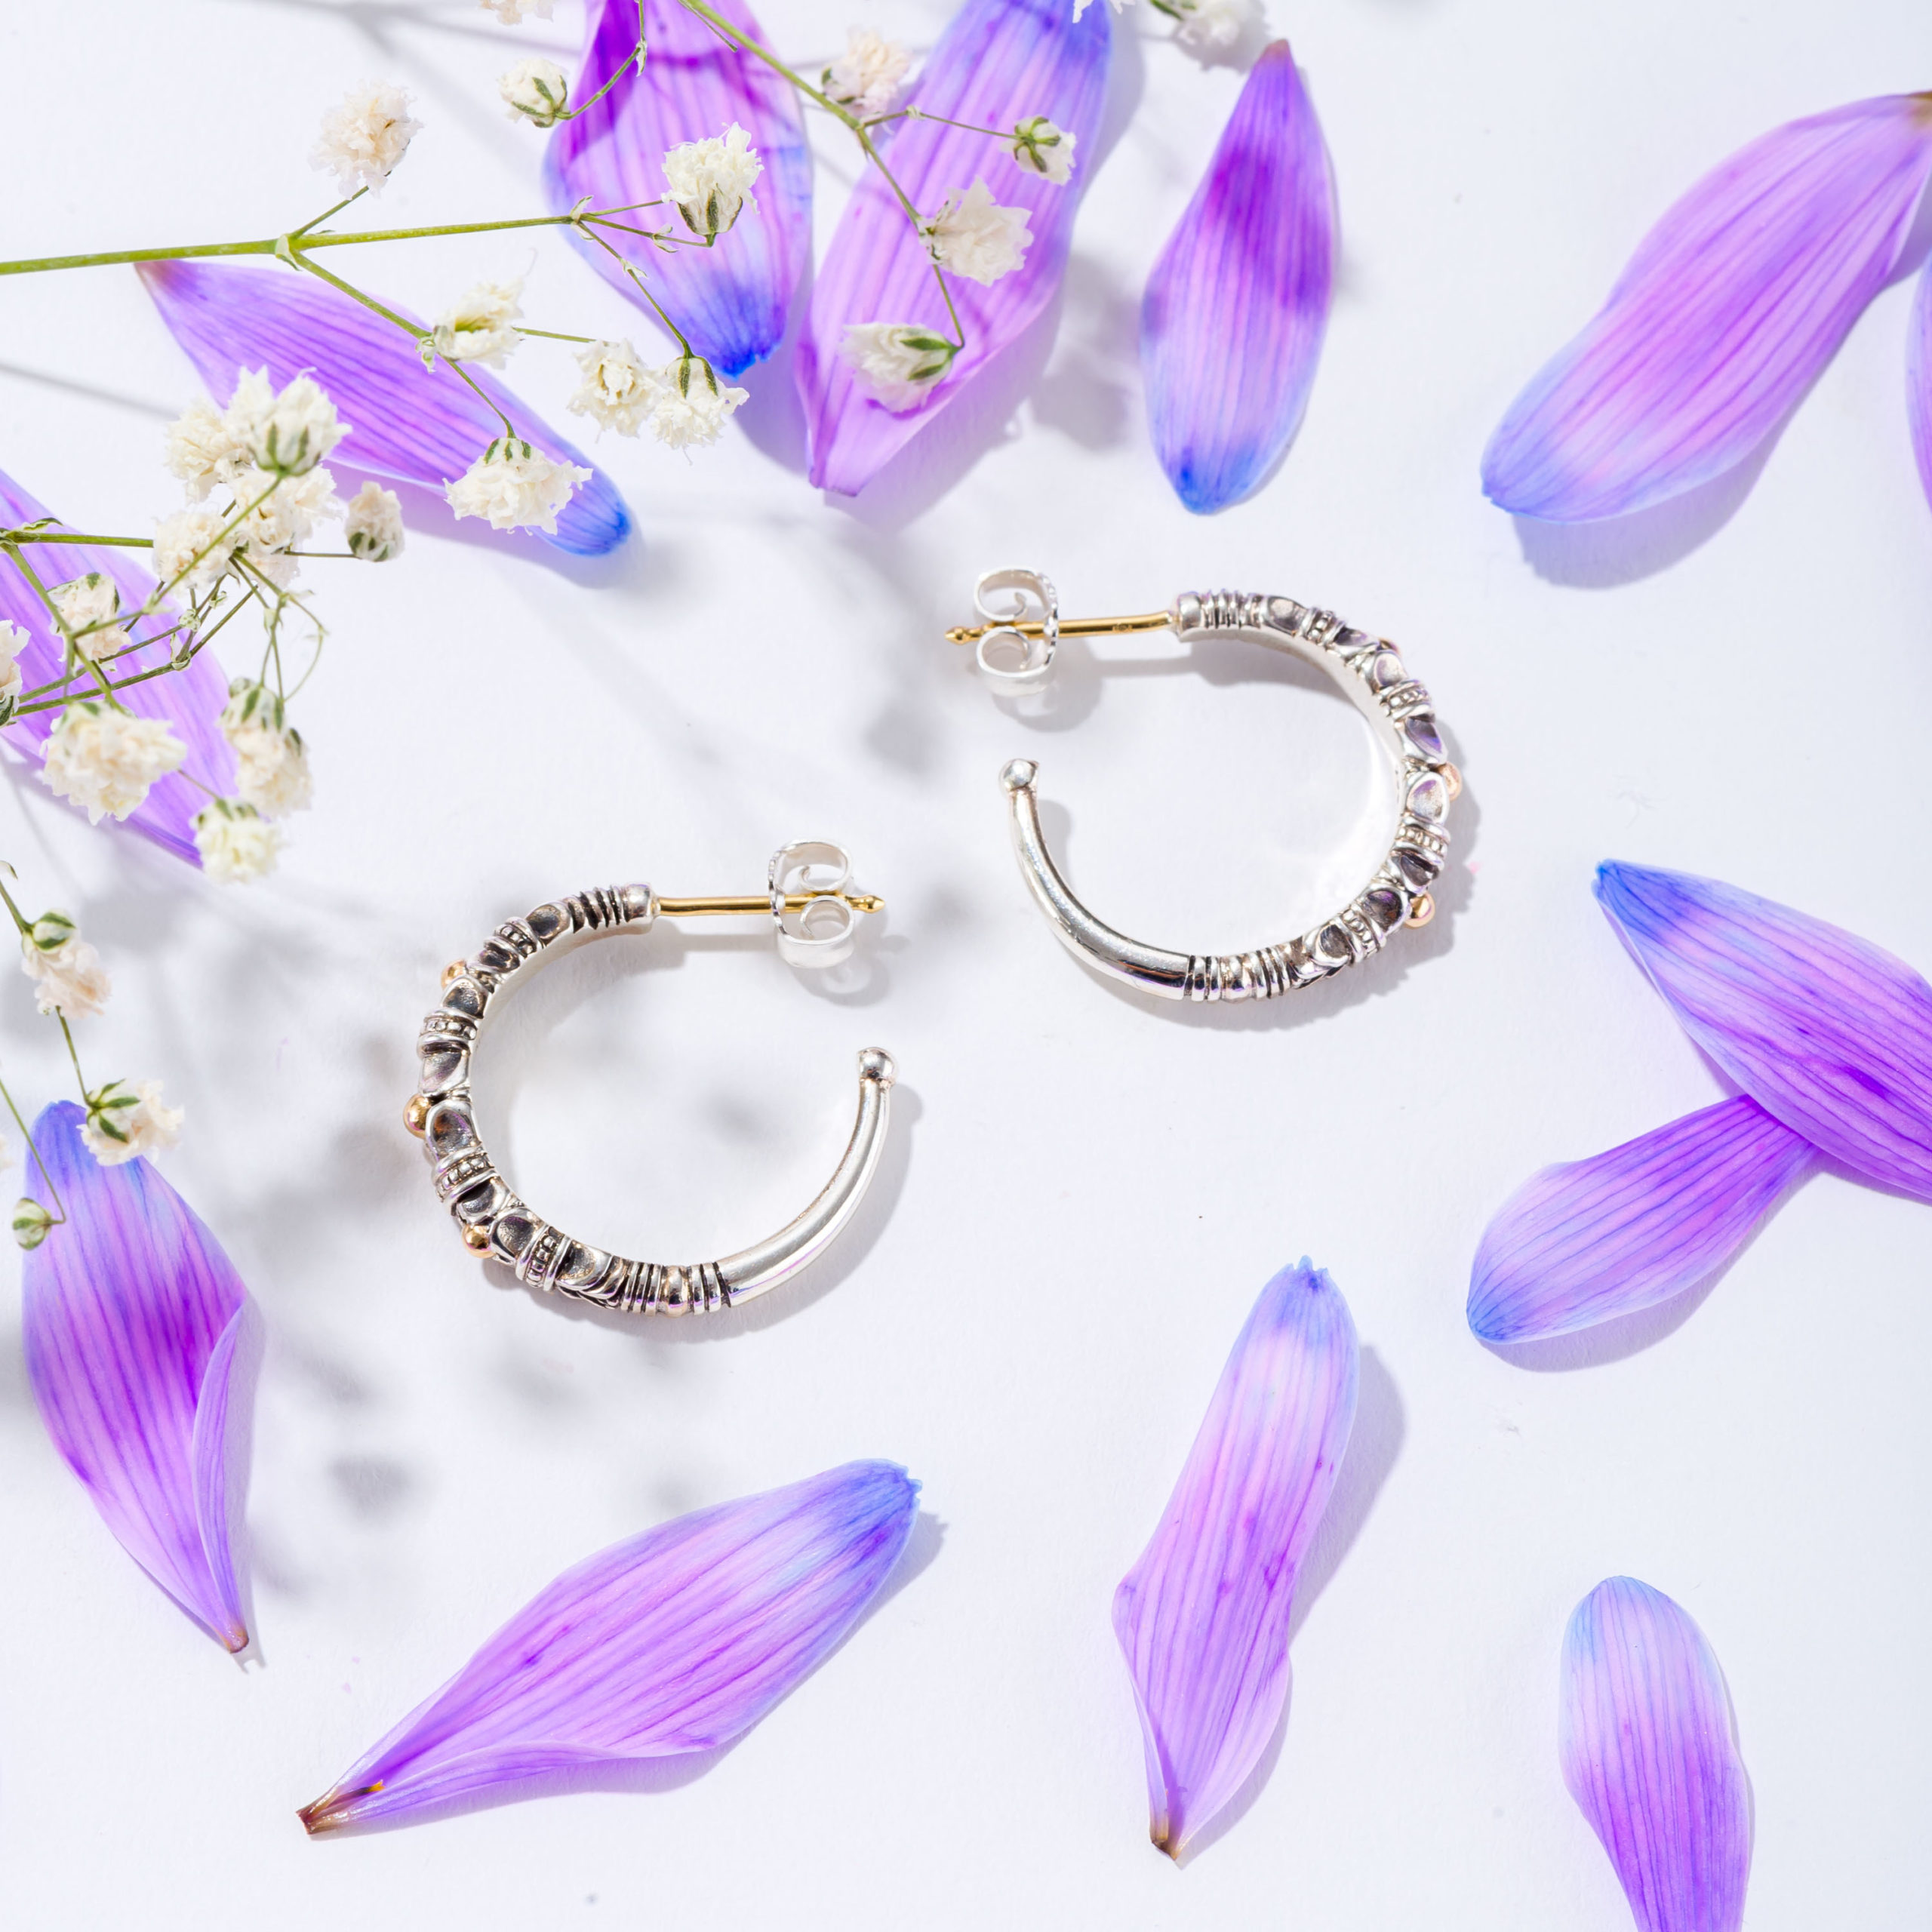 Kassandra Hoops earrings in 18K Gold and Sterling Silver